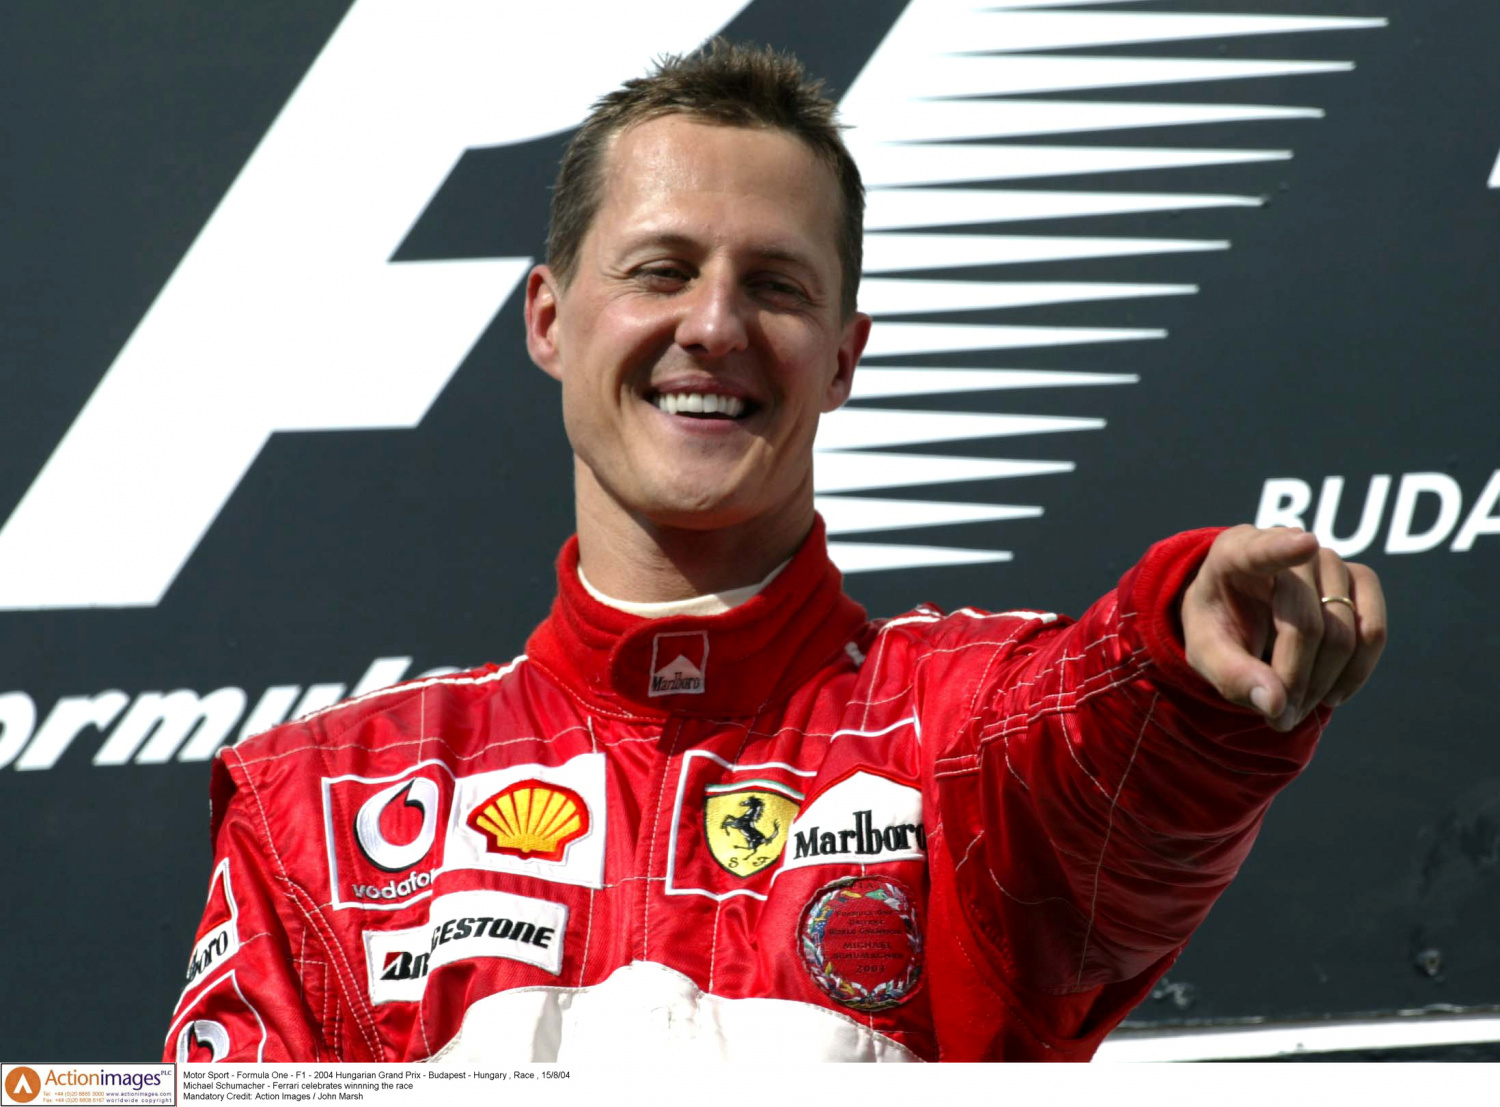 Schumacher Update Michael Schumacher's former Ferrari boss gives RARE